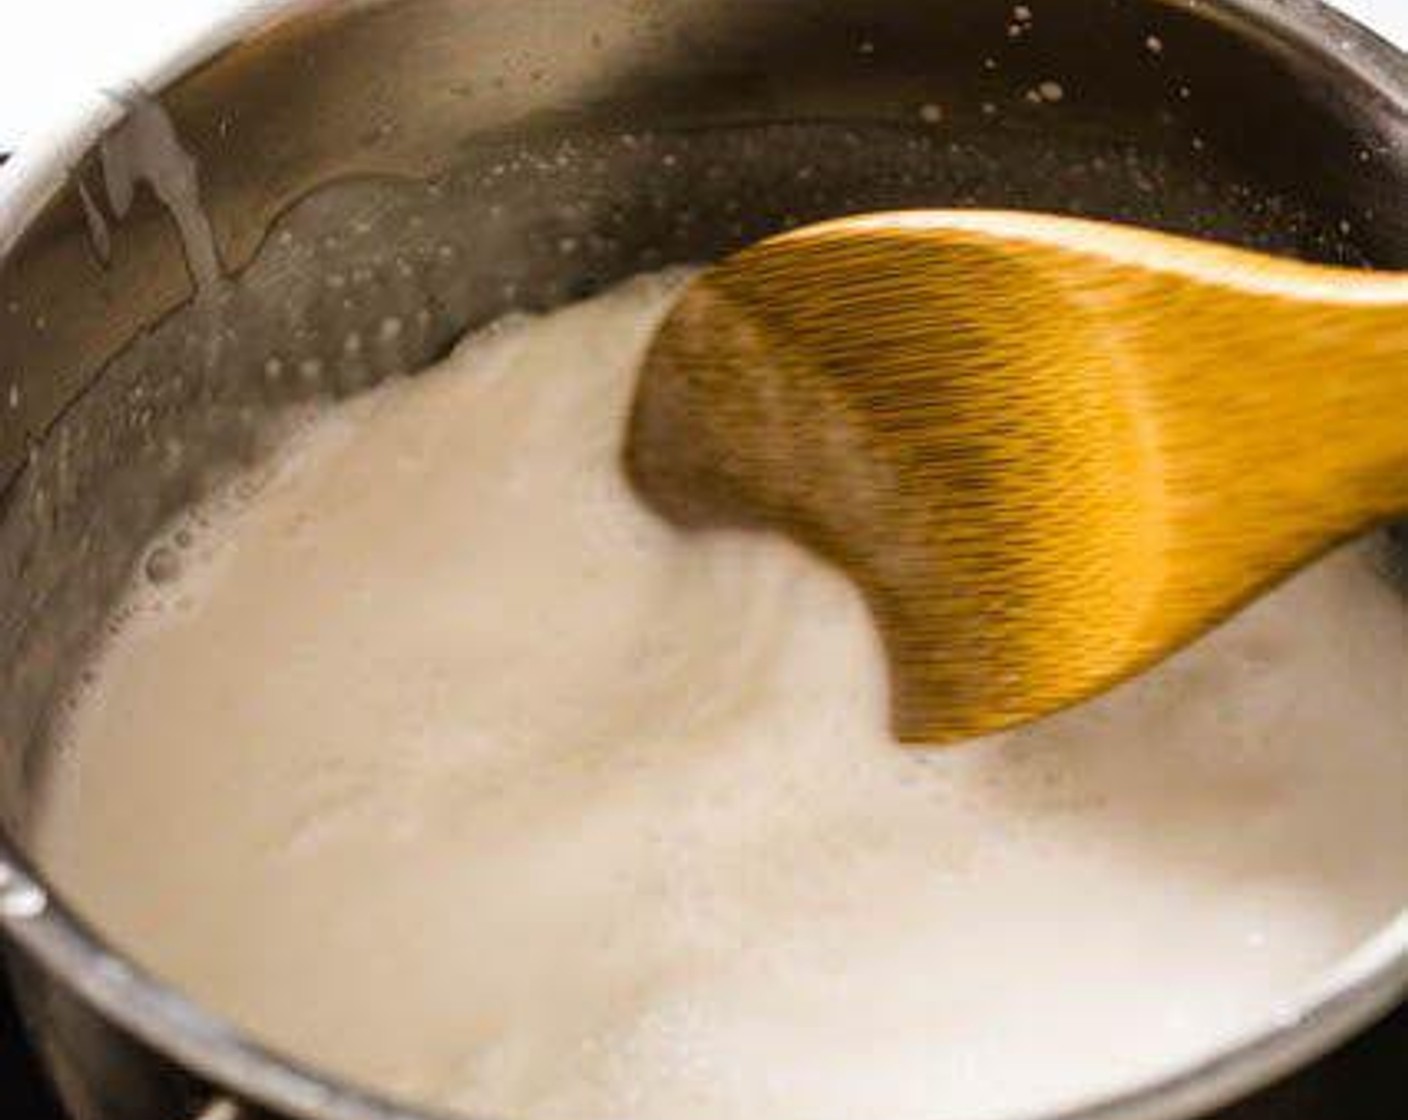 Schritt 3 In einem kleinen Topf Kokosmilch (240 ml) bei mittlerer Hitze erhitzen. Sobald sie zu kochen beginnt, Zucker (8 Teelöffel) und Salz (1 Pr.) hinzufügen. Umrühren, bis sich der Zucker und das Salz aufgelöst haben. Etwa 1/4 Tasse der Kokosnussmilchmischung zum späteren Servieren beiseitestellen.